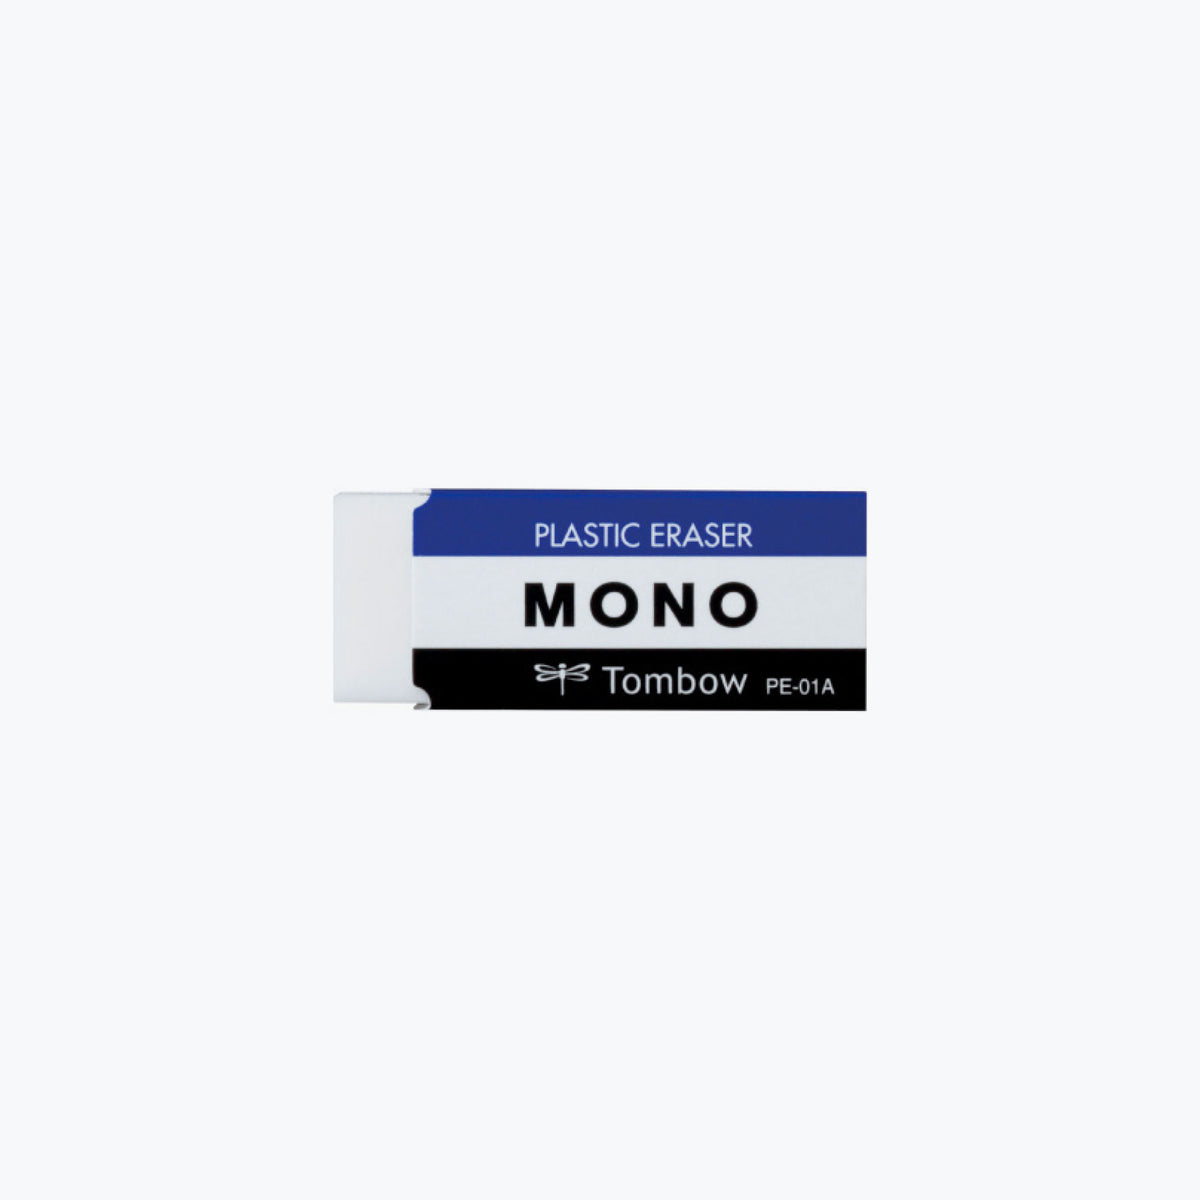 Tombow - Eraser - Mono - Small